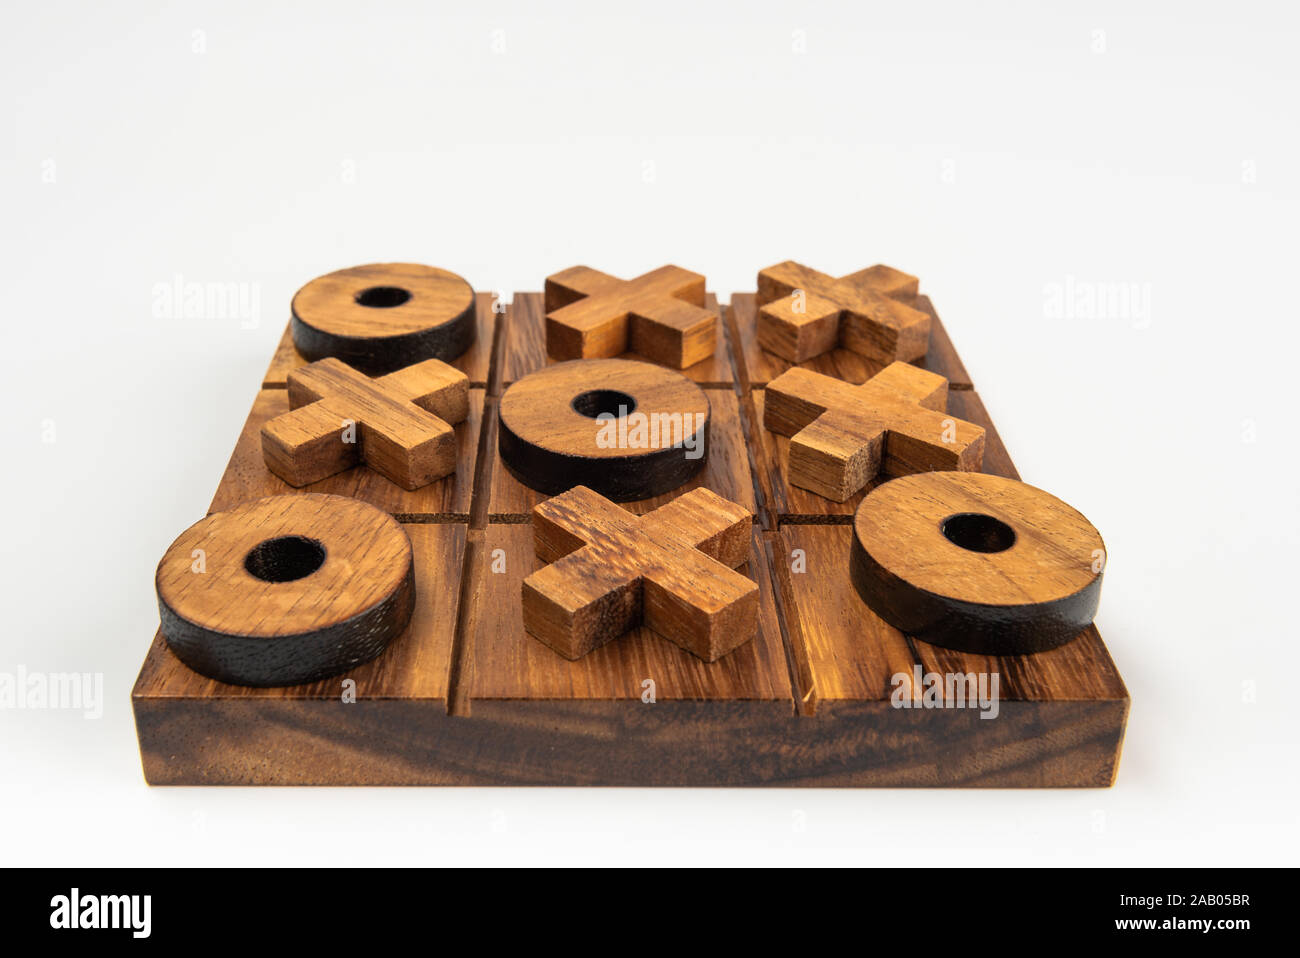 Ist eine klassische Kinder Tic Tac Toe Spiel des naughts und Kreuze aus Holz. Stockfoto